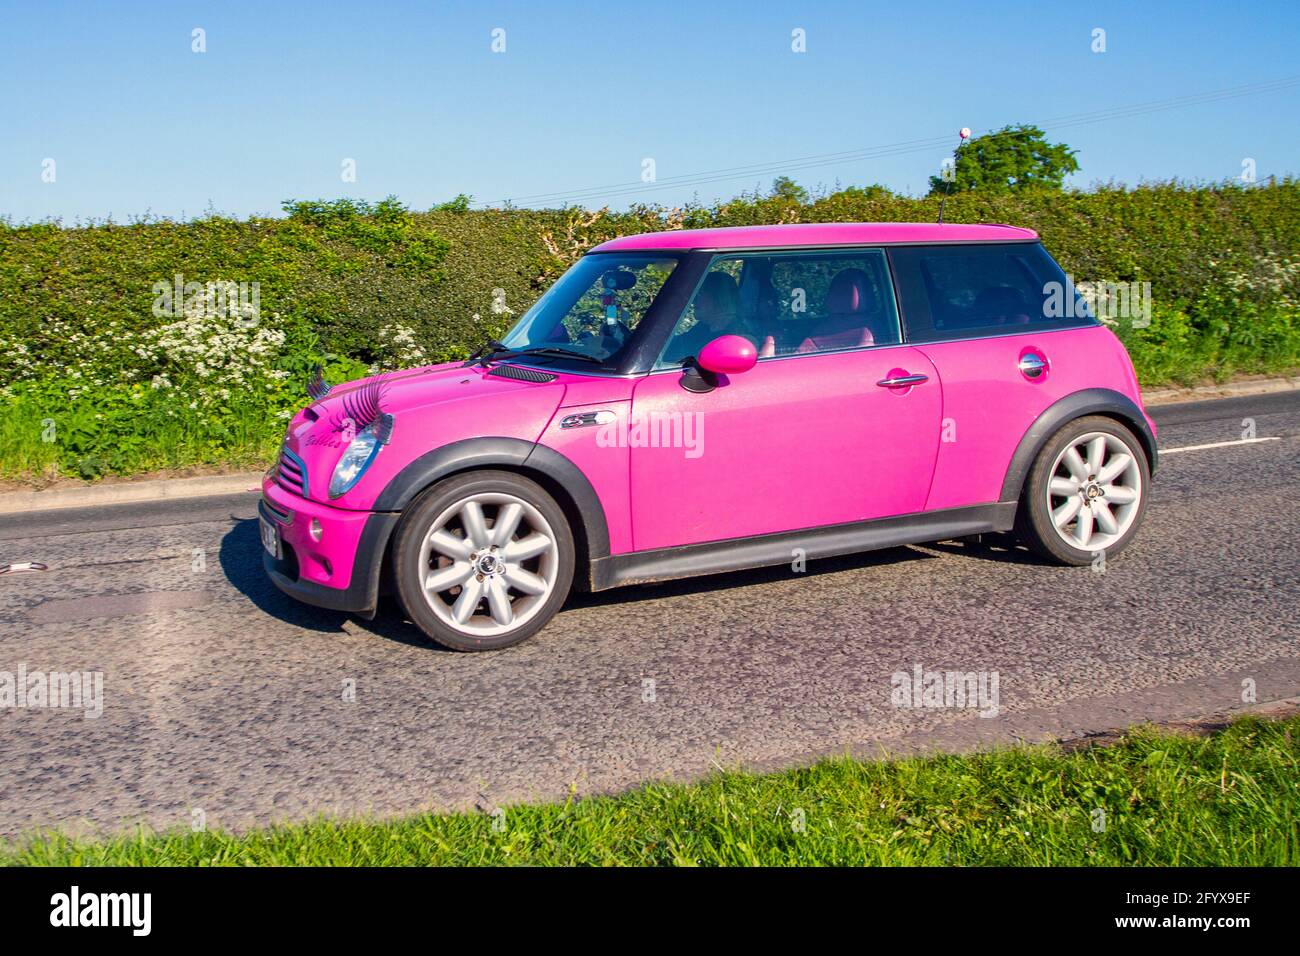 2004 pink Mini Cooper S, mit Augenbrauen auf den Scheinwerfern; Fahrzeugverkehr, bewegliche Fahrzeuge, Autos, Fahrzeuge, die auf britischen Straßen fahren, Motoren, auf dem Weg zur Capesthorne Hall classic May Car Show, Ceshire, UK Stockfoto